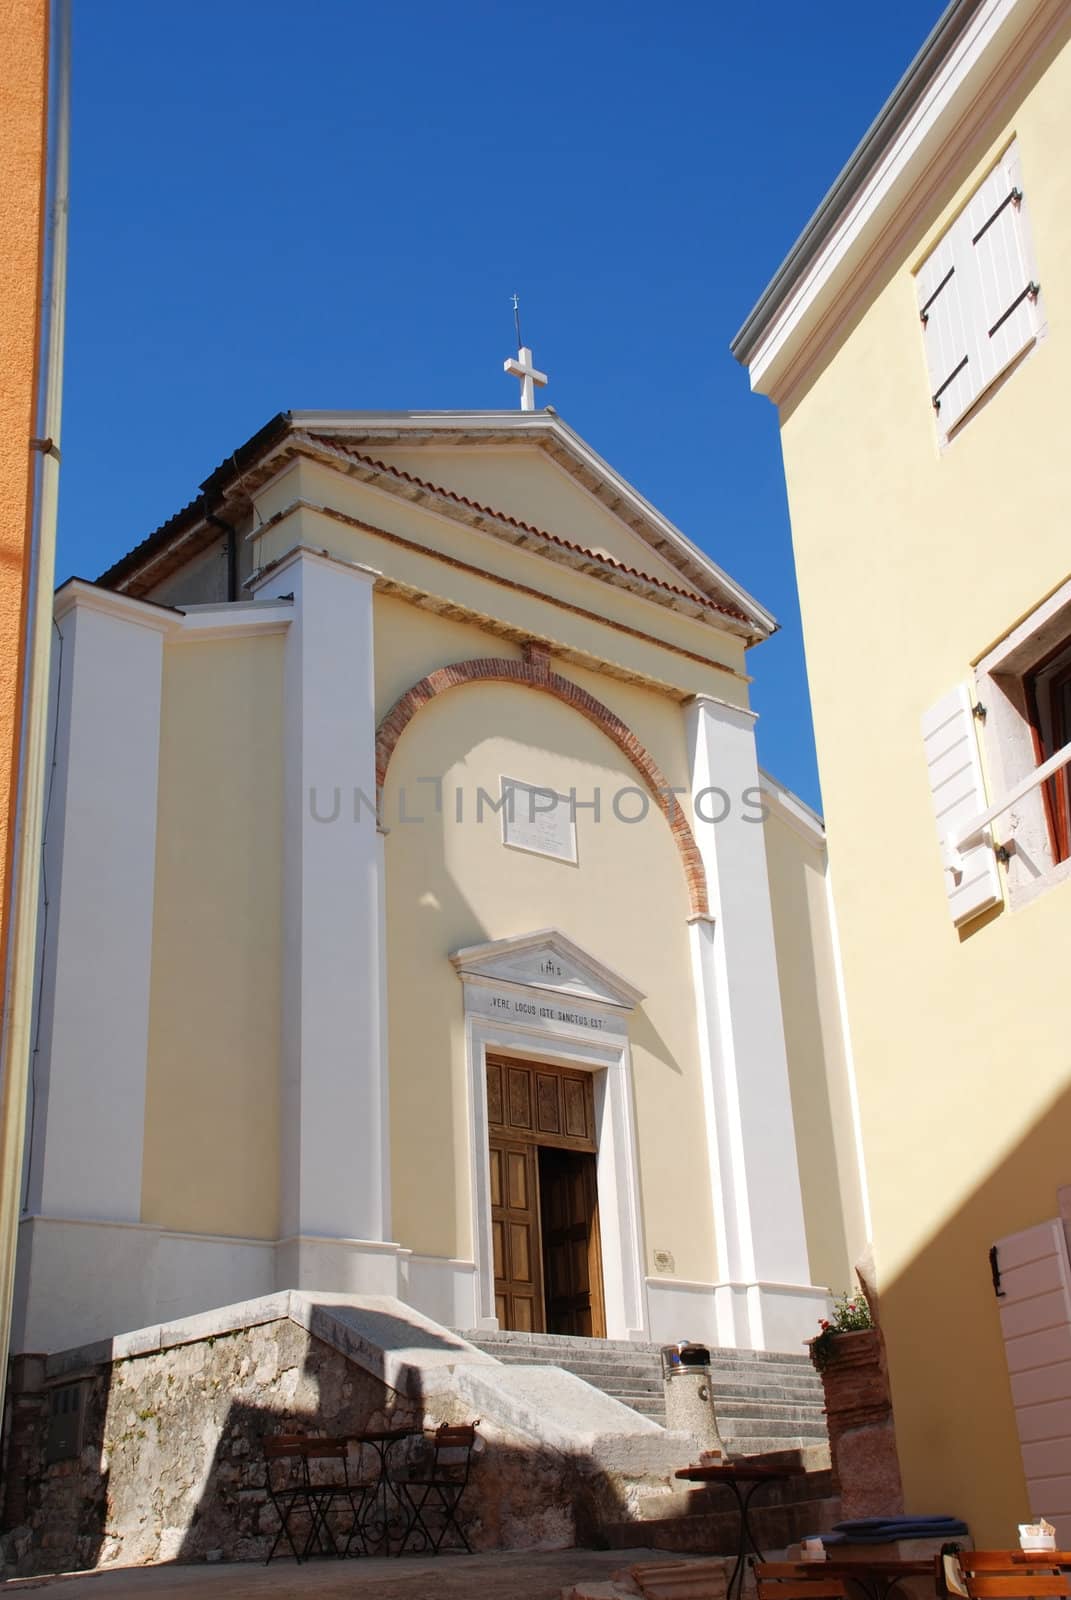 Santa Maria cathedral at Vrsar city, Croatia